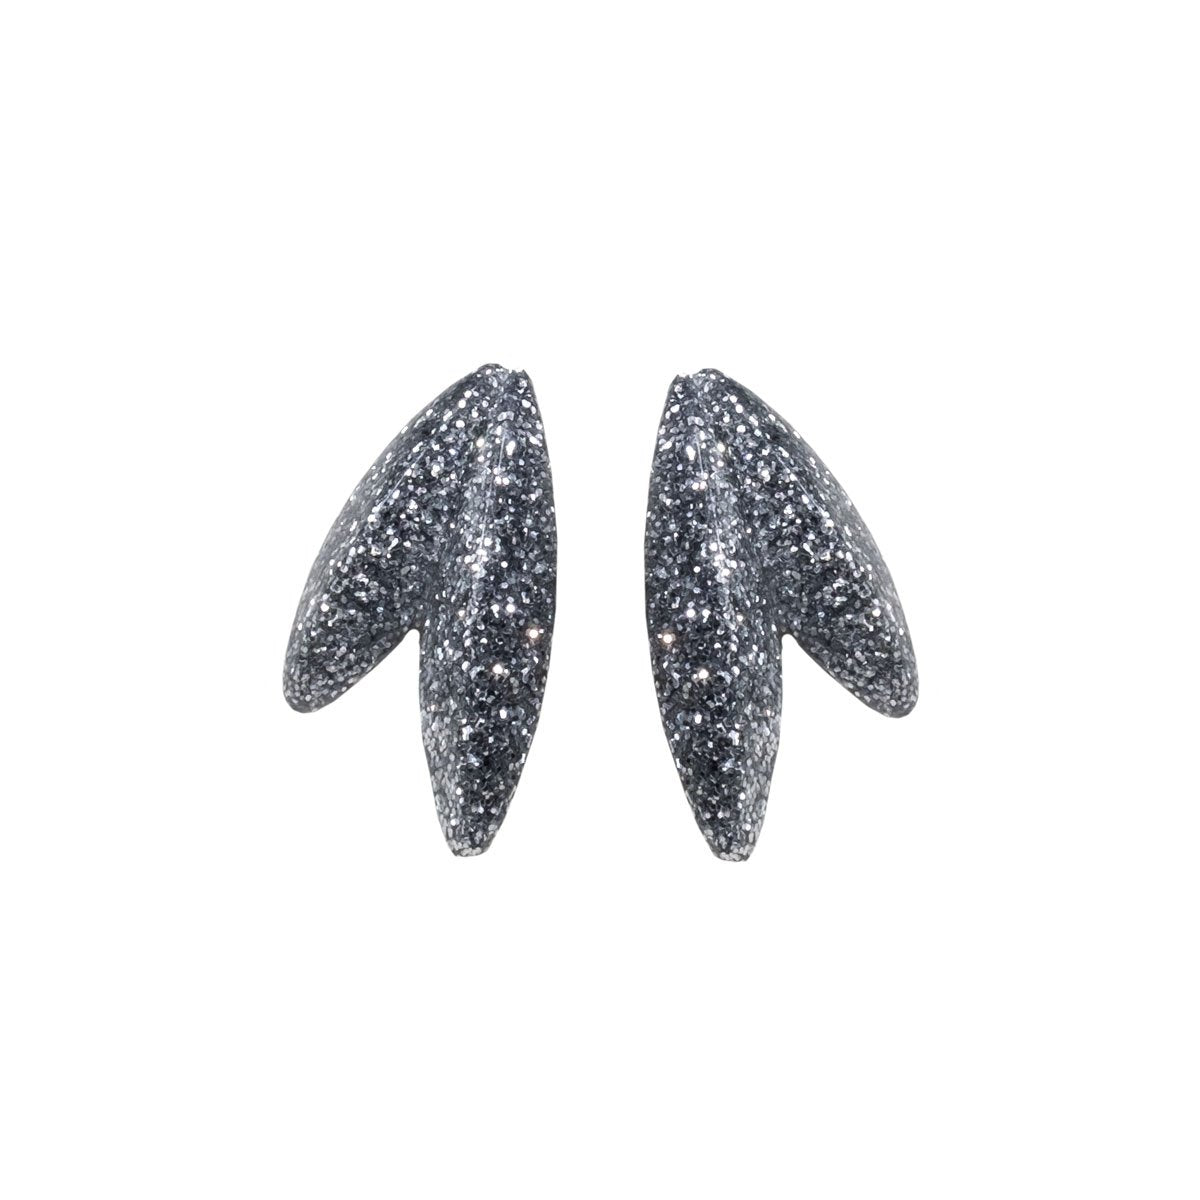 Twin-LEAVES ✕ Shine earrings, silver